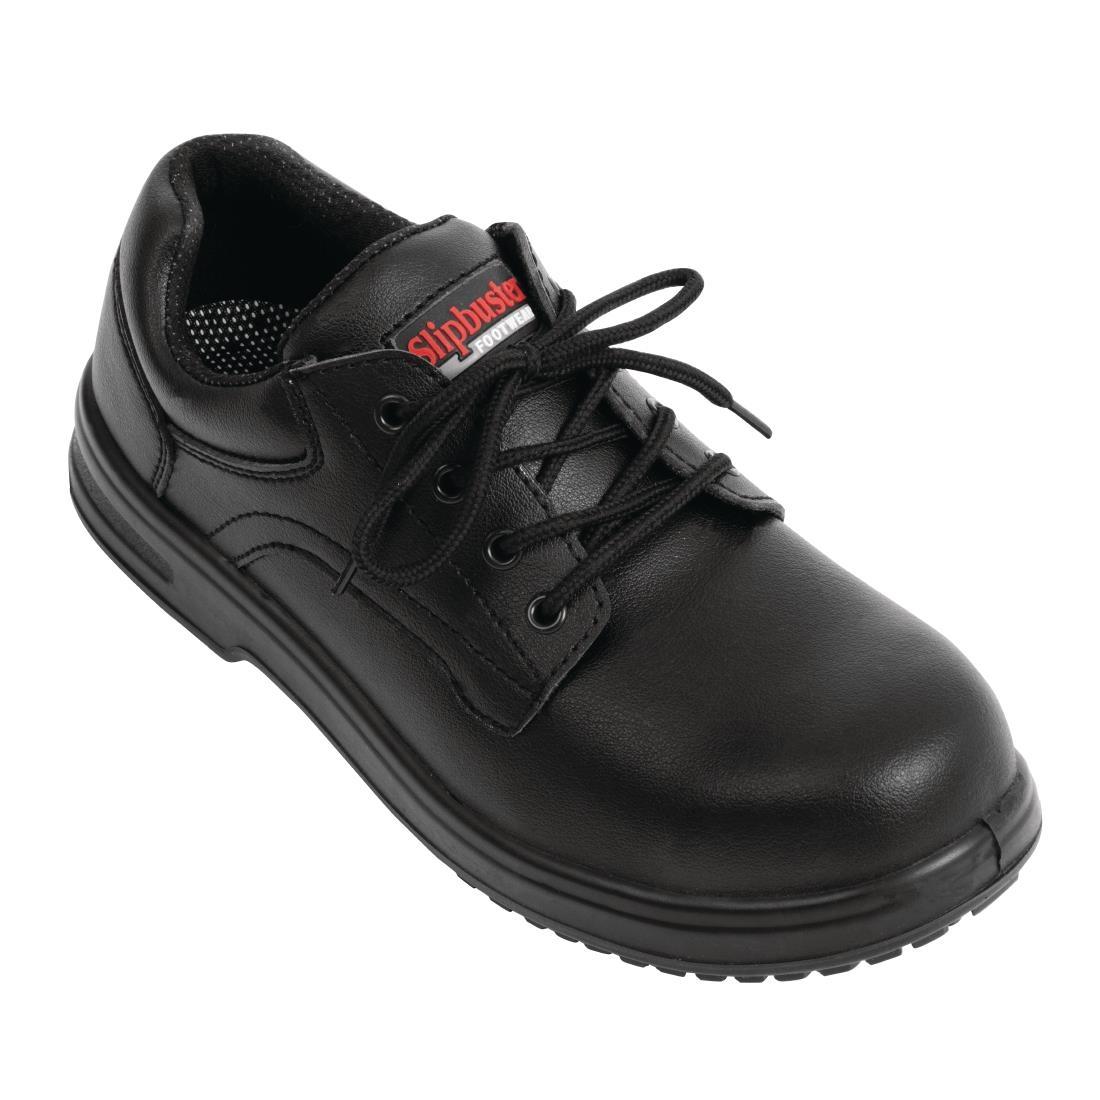 Slipbuster Basic Shoes Slip Resistant Black 40 - BB498-40  - 1